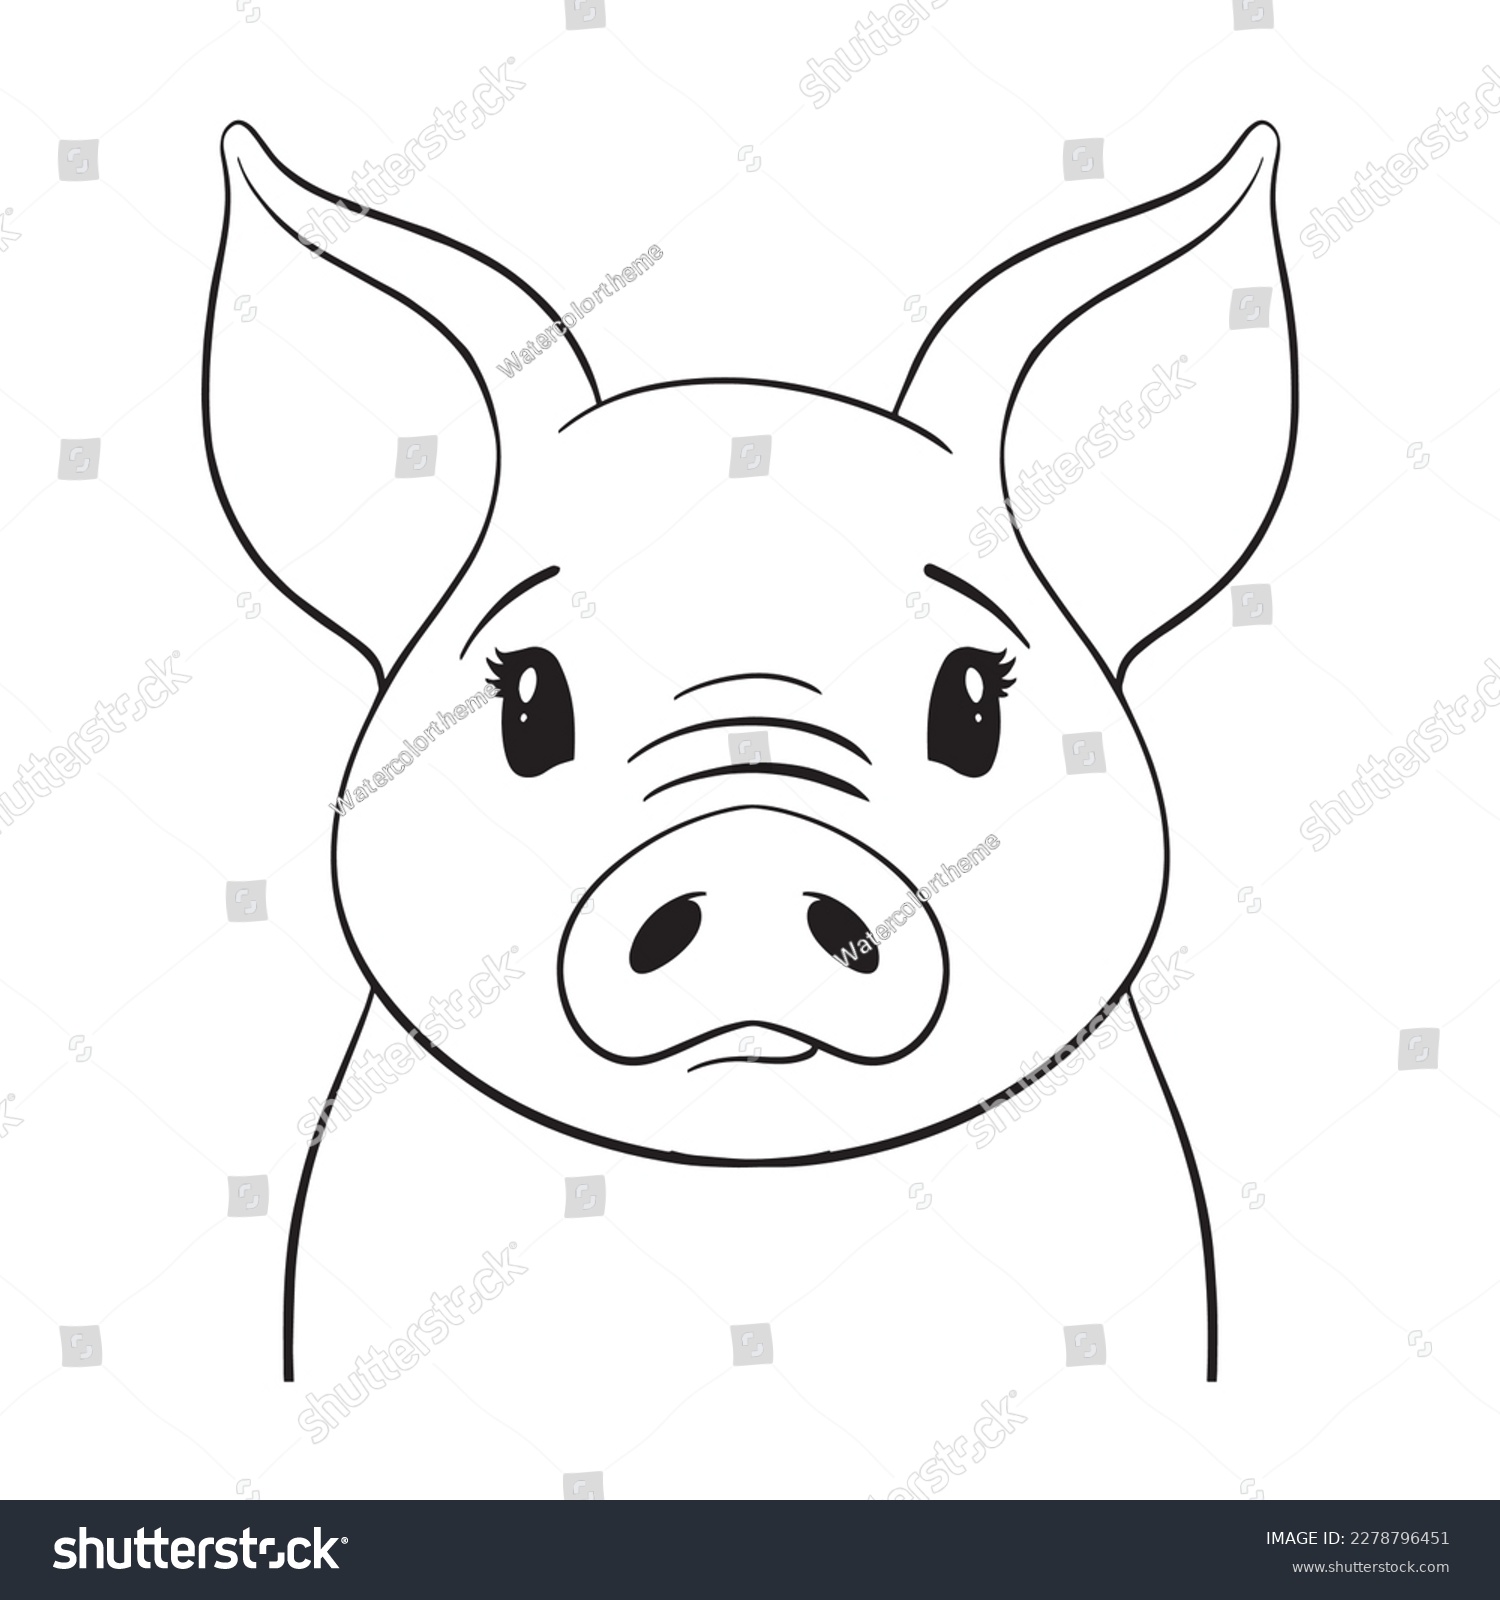 SVG of Pig Svg File,Pig Cut File,Cute Pig Svg,Pig Face svg,Pig Vector,Pig Clipart,Pig Lineart,Farm Animal svg,Animal svg file,Pig png, Farm Animal svg file,Farm svg,Pig Lineart ,Pig cricut file svg